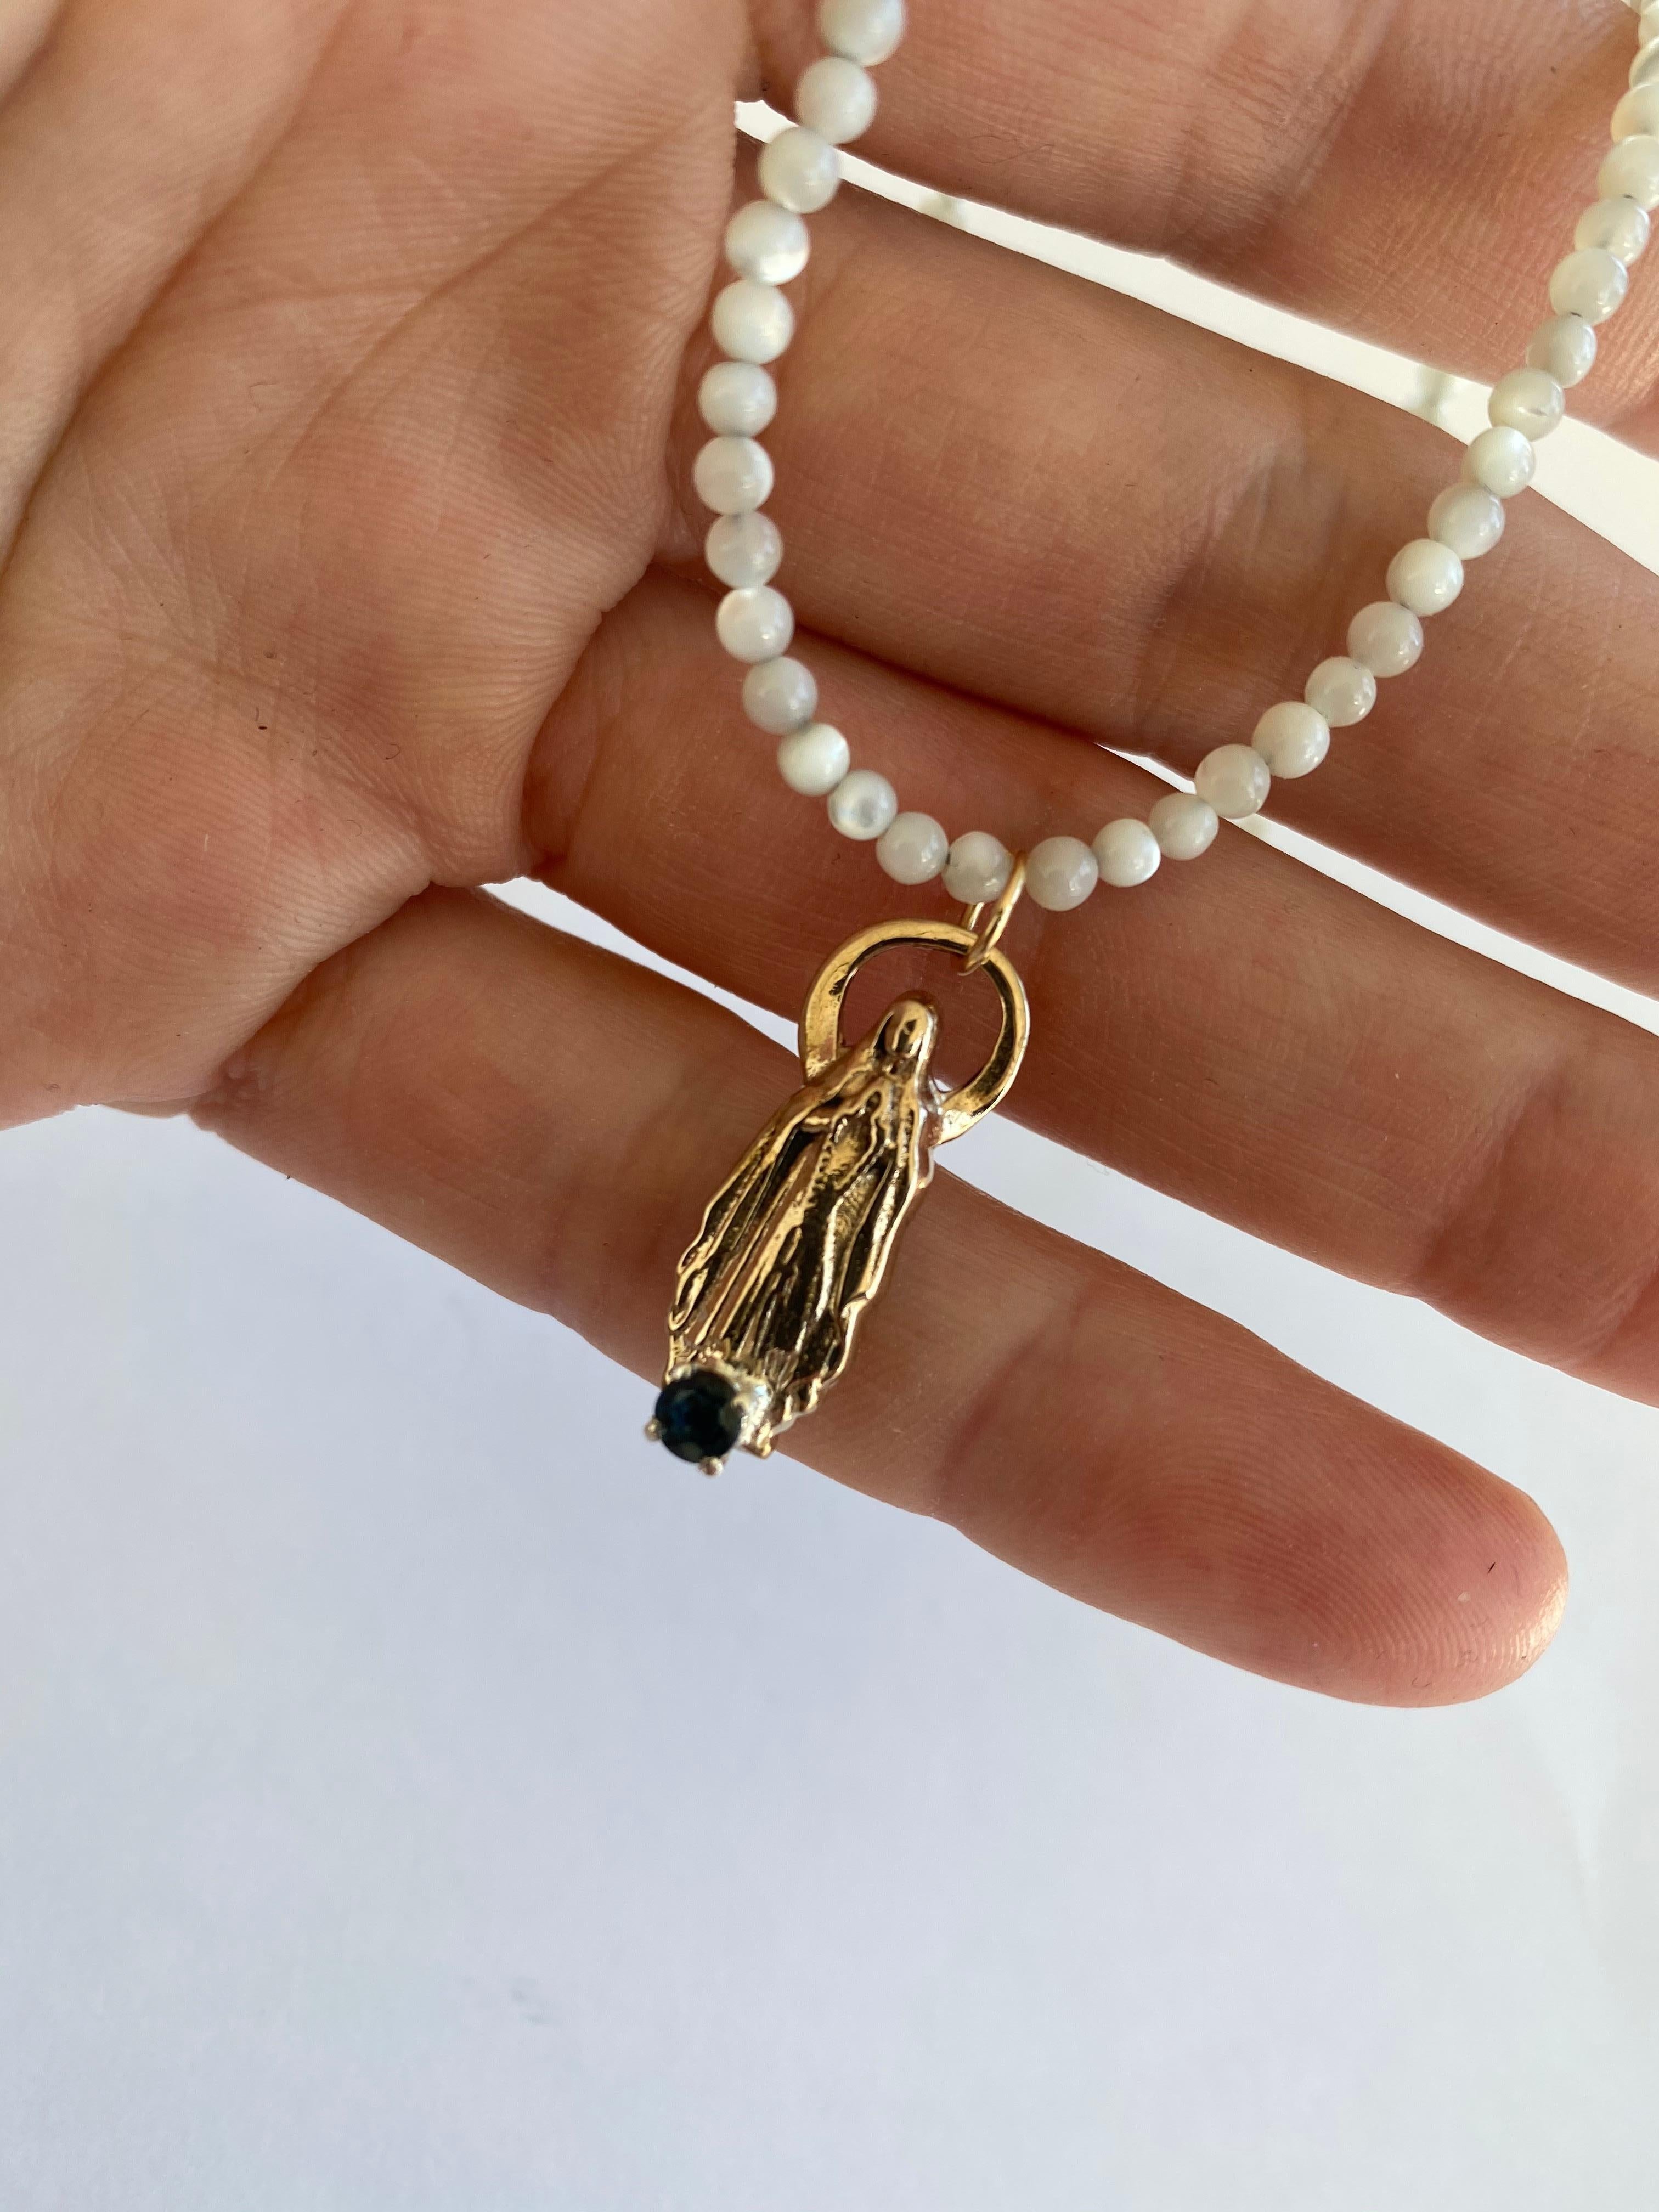 Saphir Jungfrau Maria Weiße Perlenkette J DAUPHIN

Exklusives Stück mit einem Anhänger der Jungfrau Maria und einem blauen Saphir, der in einer Goldzacke auf einem Anhänger einer Bronzefigur gefasst ist. Die Perlenkette ist 16' lang.

Symbole oder